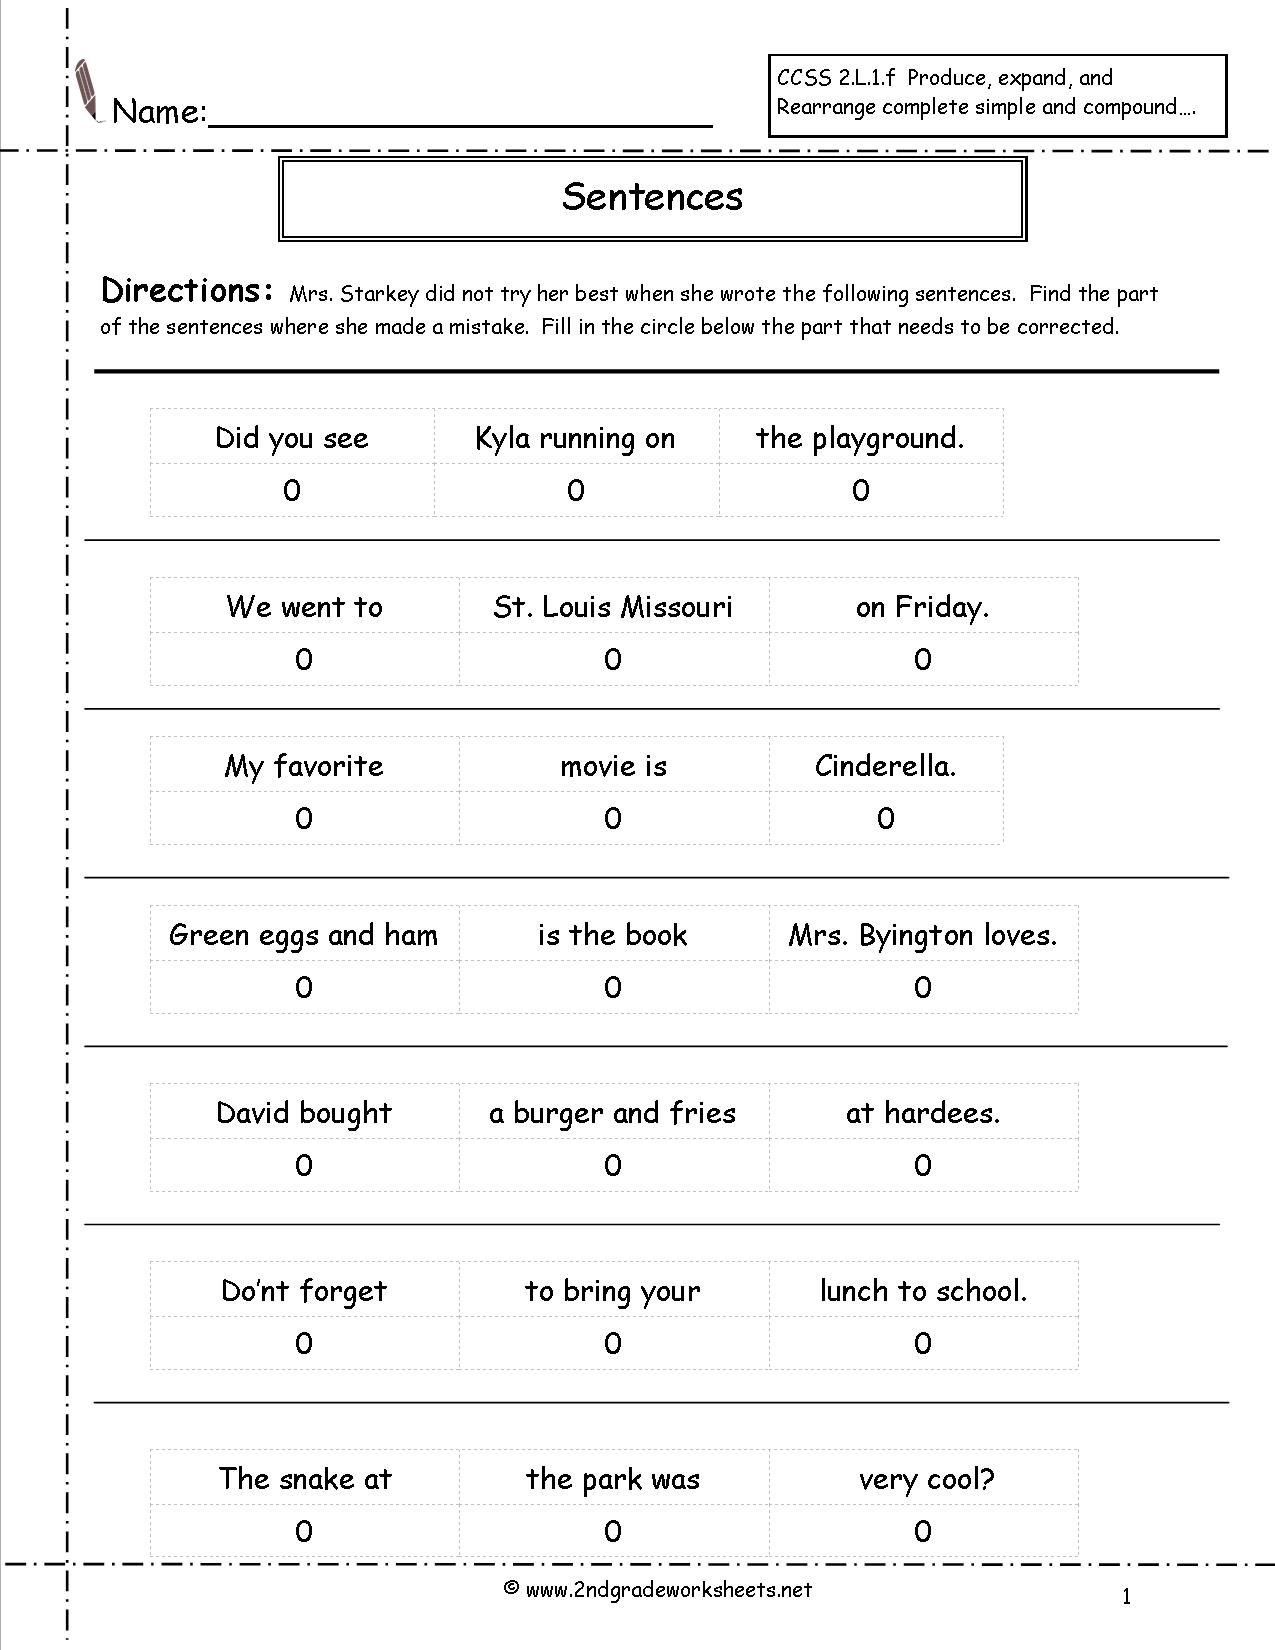 2nd Grade Sentence Completion Worksheets